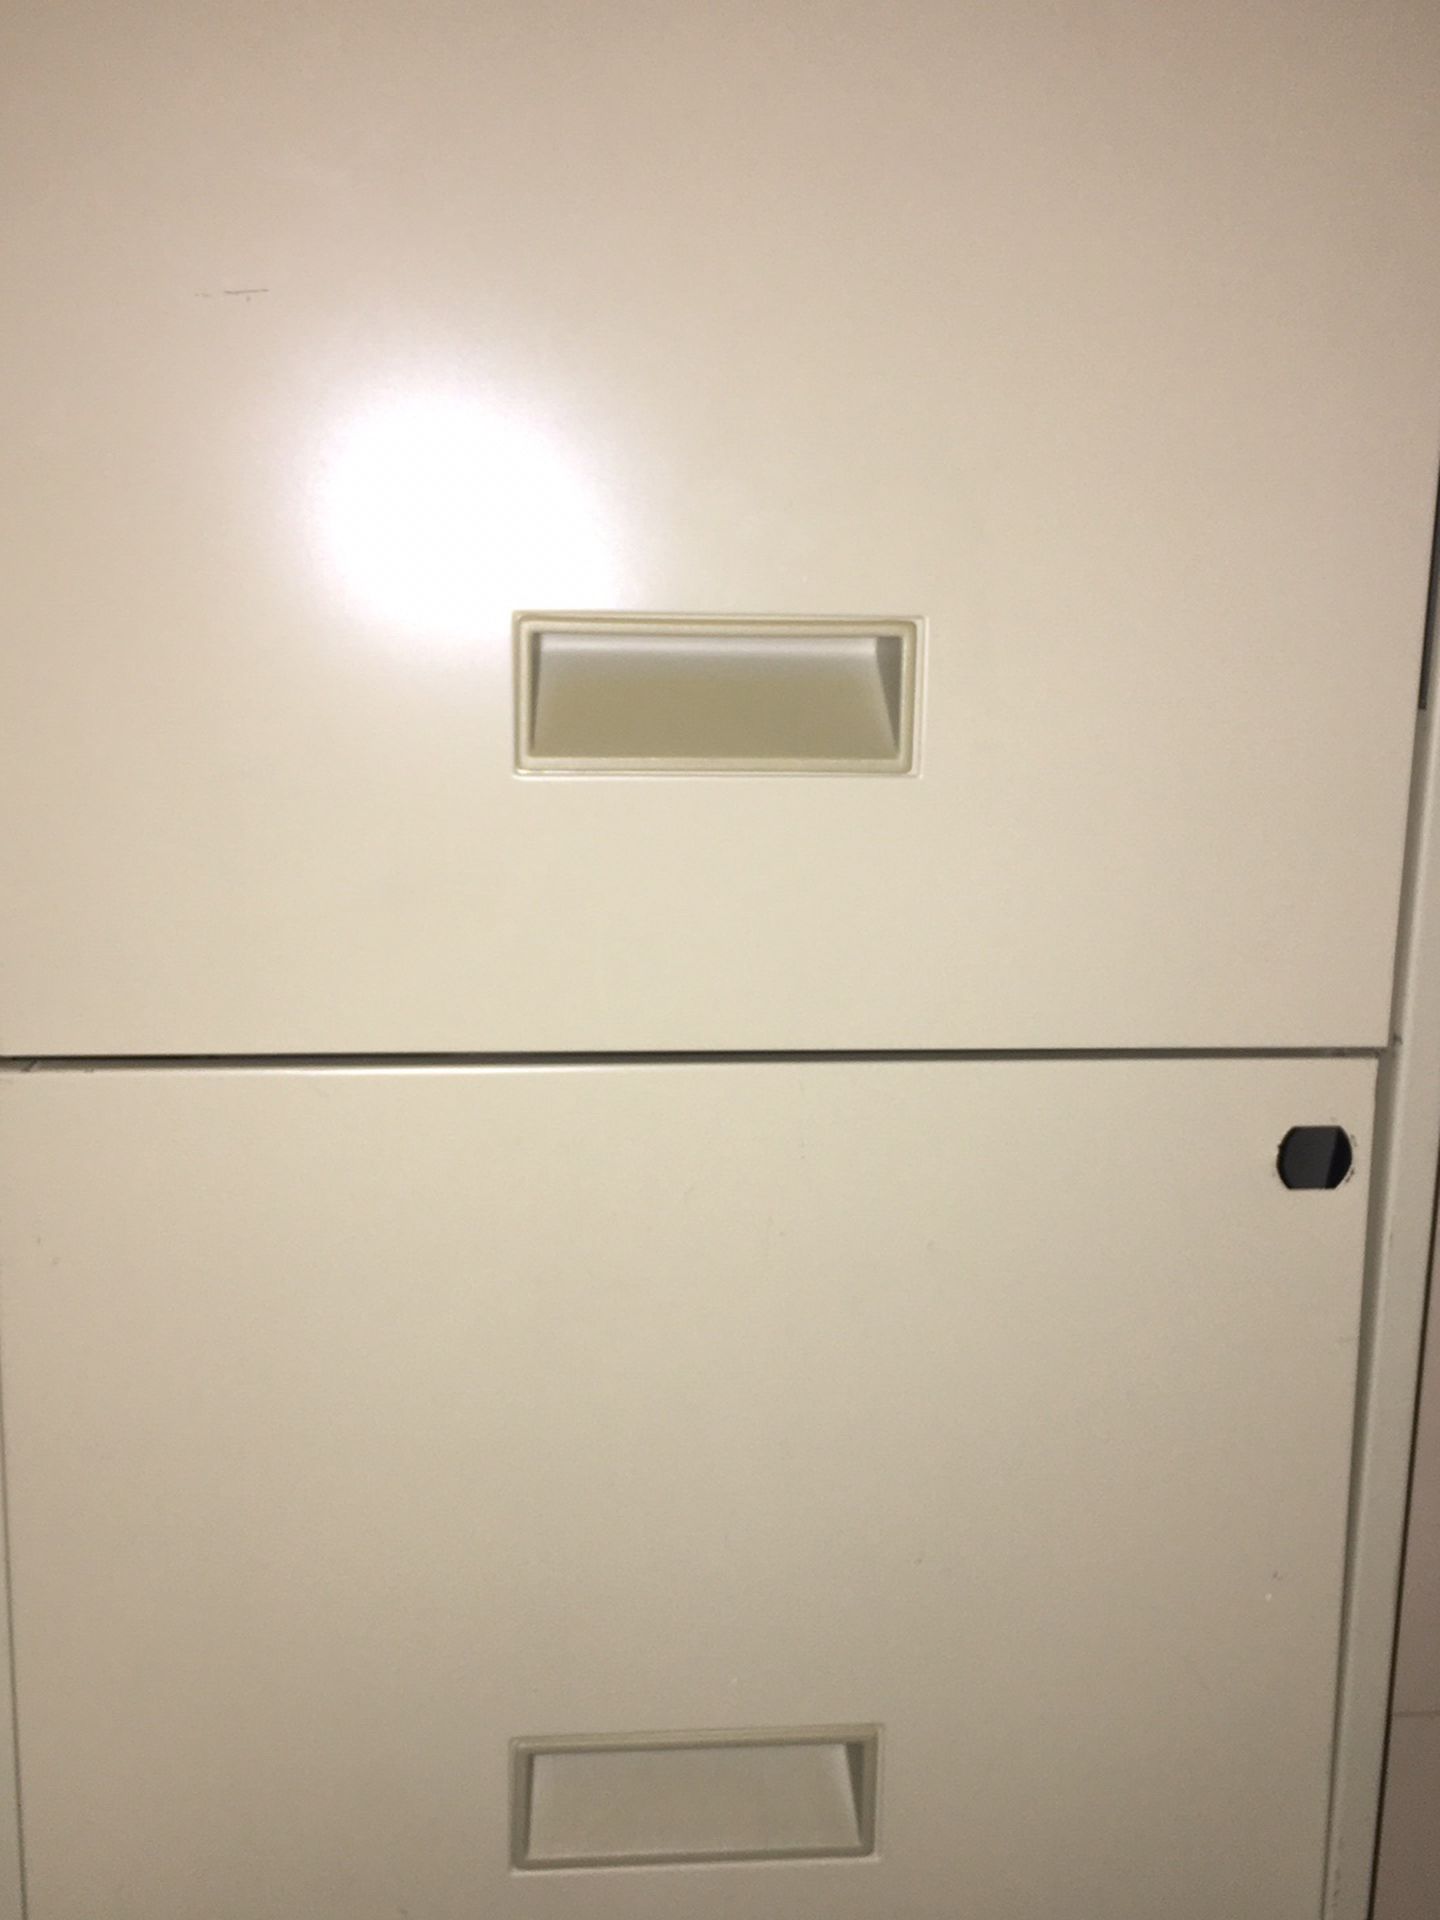 File Cabinet - 2 drawer, metal